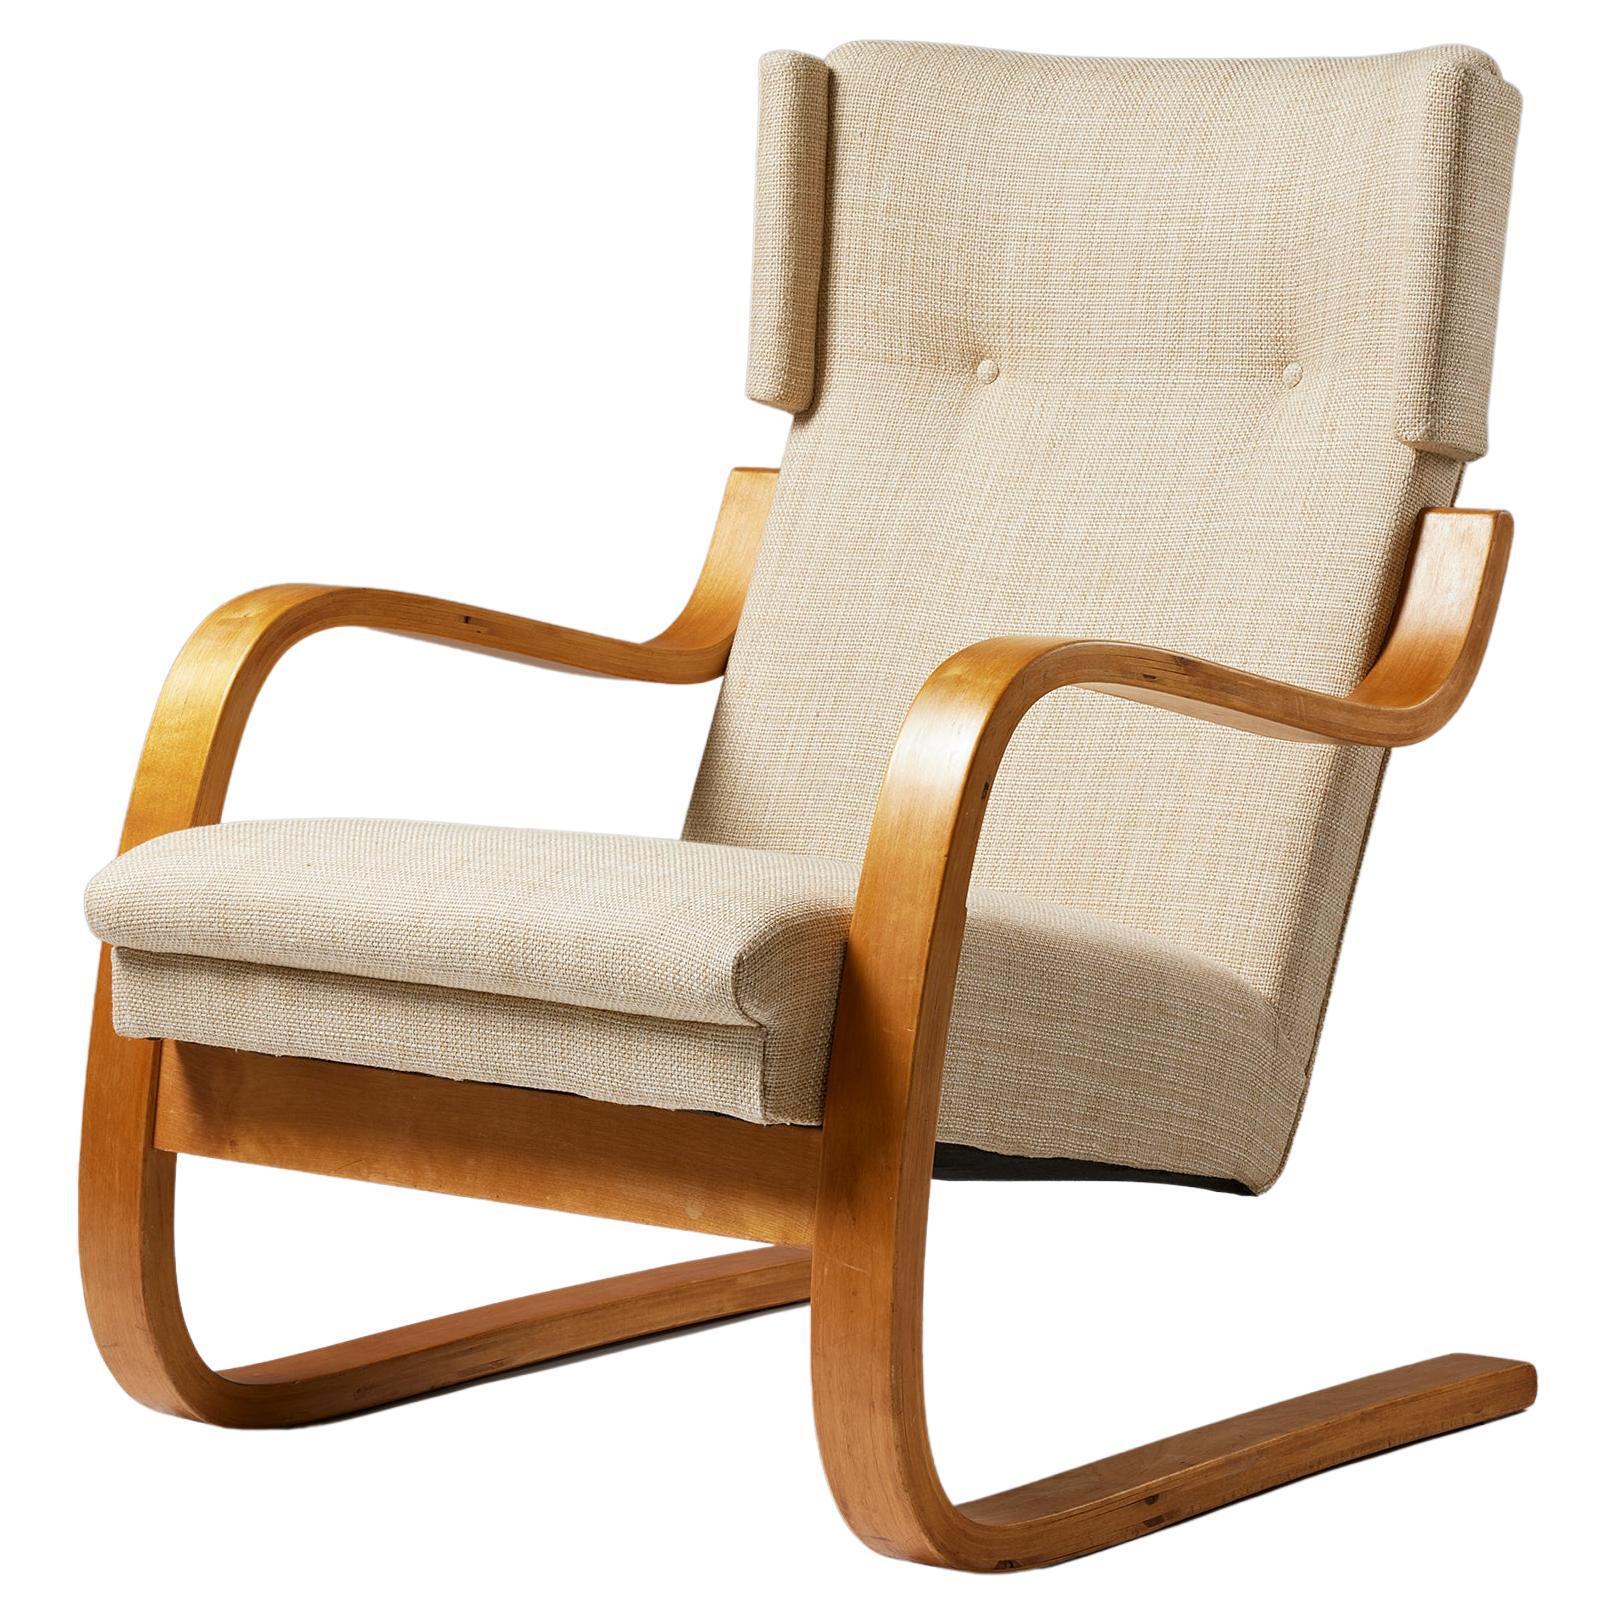 Easy Chair Model 36 / 401 Designed by Alvar Aalto for Artek, Finland, 1933